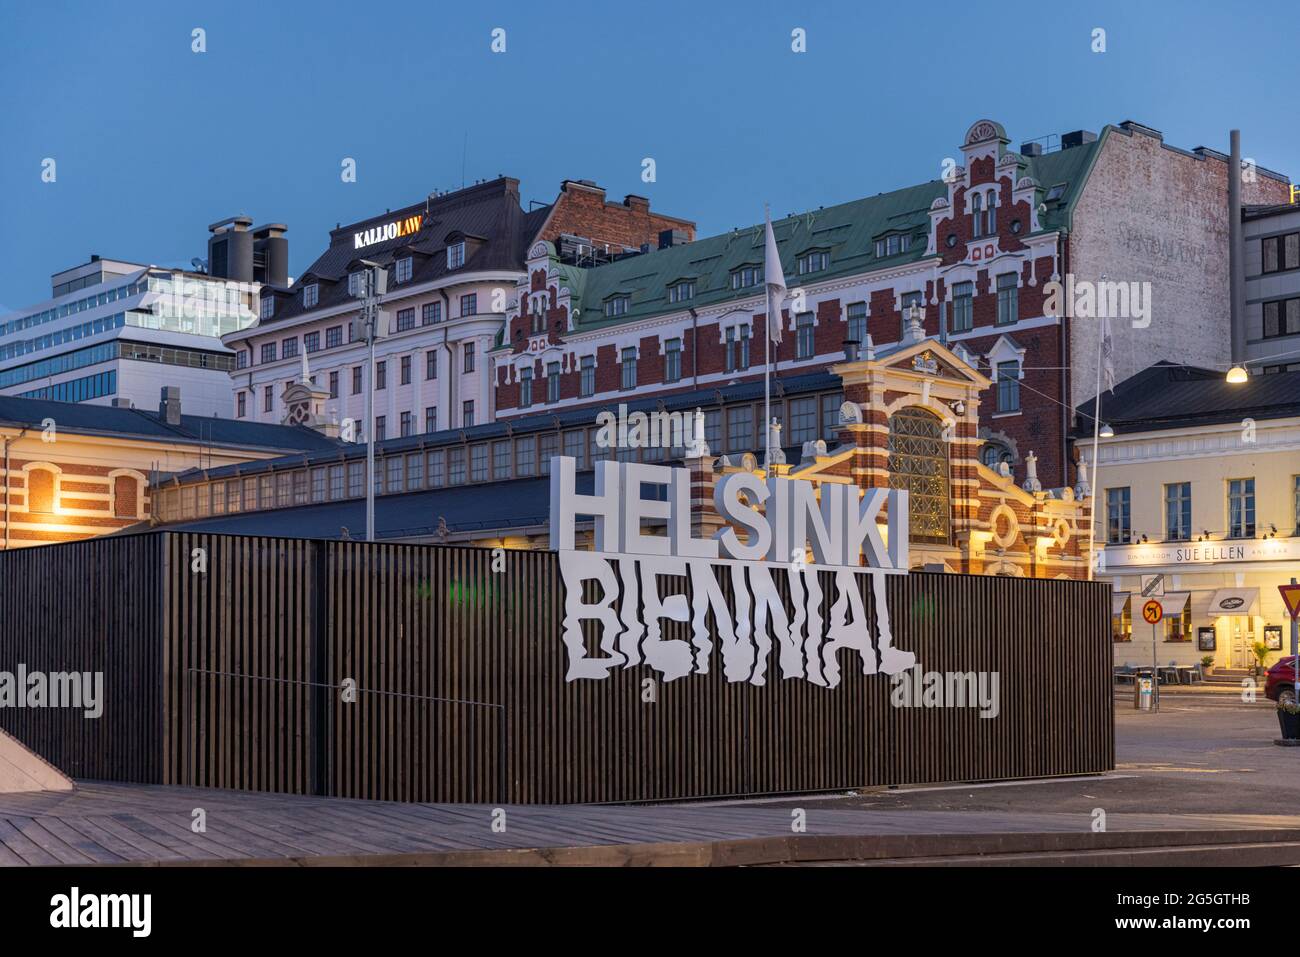 La mostra biennale-artistica di Helsinki è divisa in diverse località in tutta la città Foto Stock